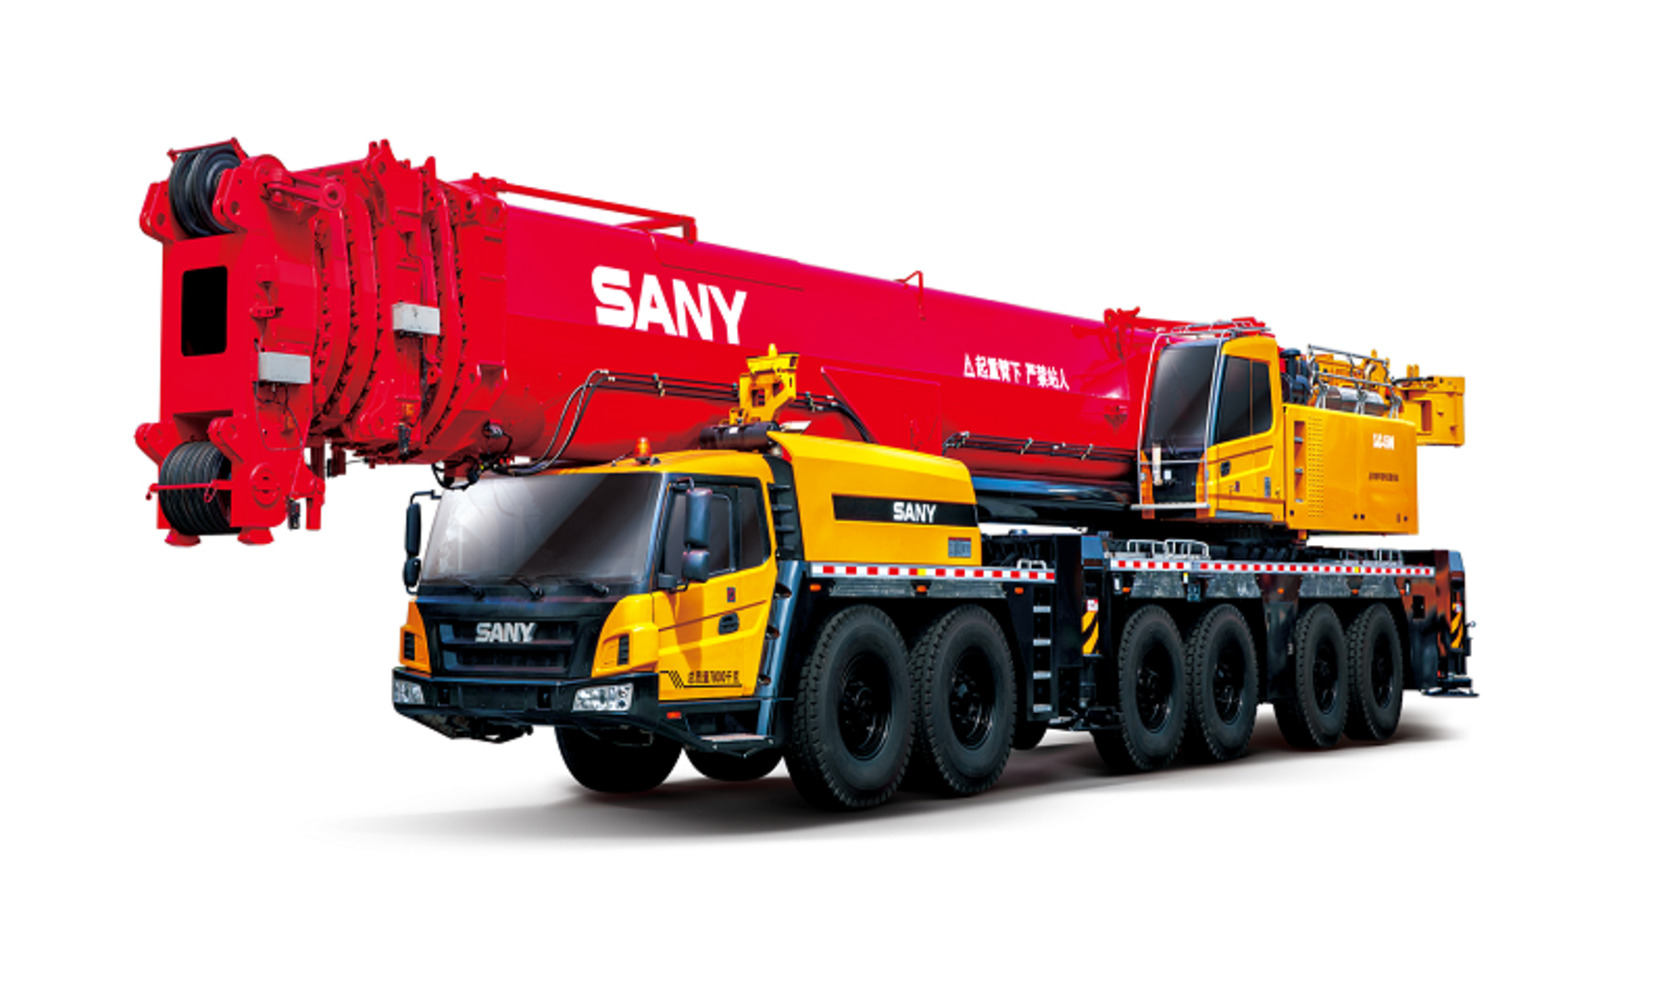 Автокран вездеход Palfinger Sany SAC4500S 450 тонн, 84 метра